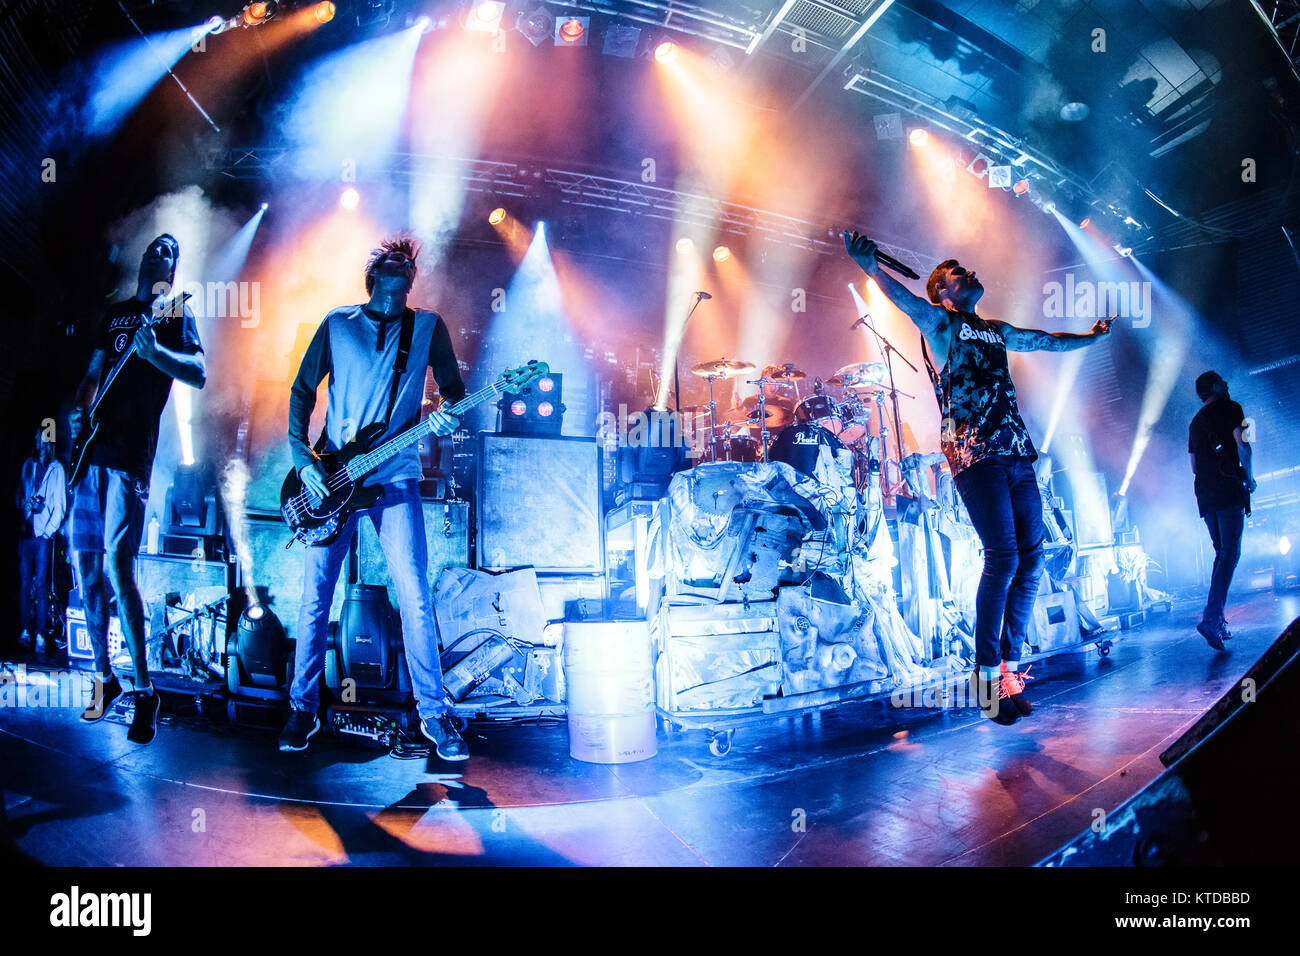 La Australian metalcore band Parkway Drive esegue un concerto dal vivo a Amager Bio in Copenhagen. Qui la cantante Winston McCall è visto dal vivo sul palco con bass player. Danimarca, 10/12 2014. Foto Stock